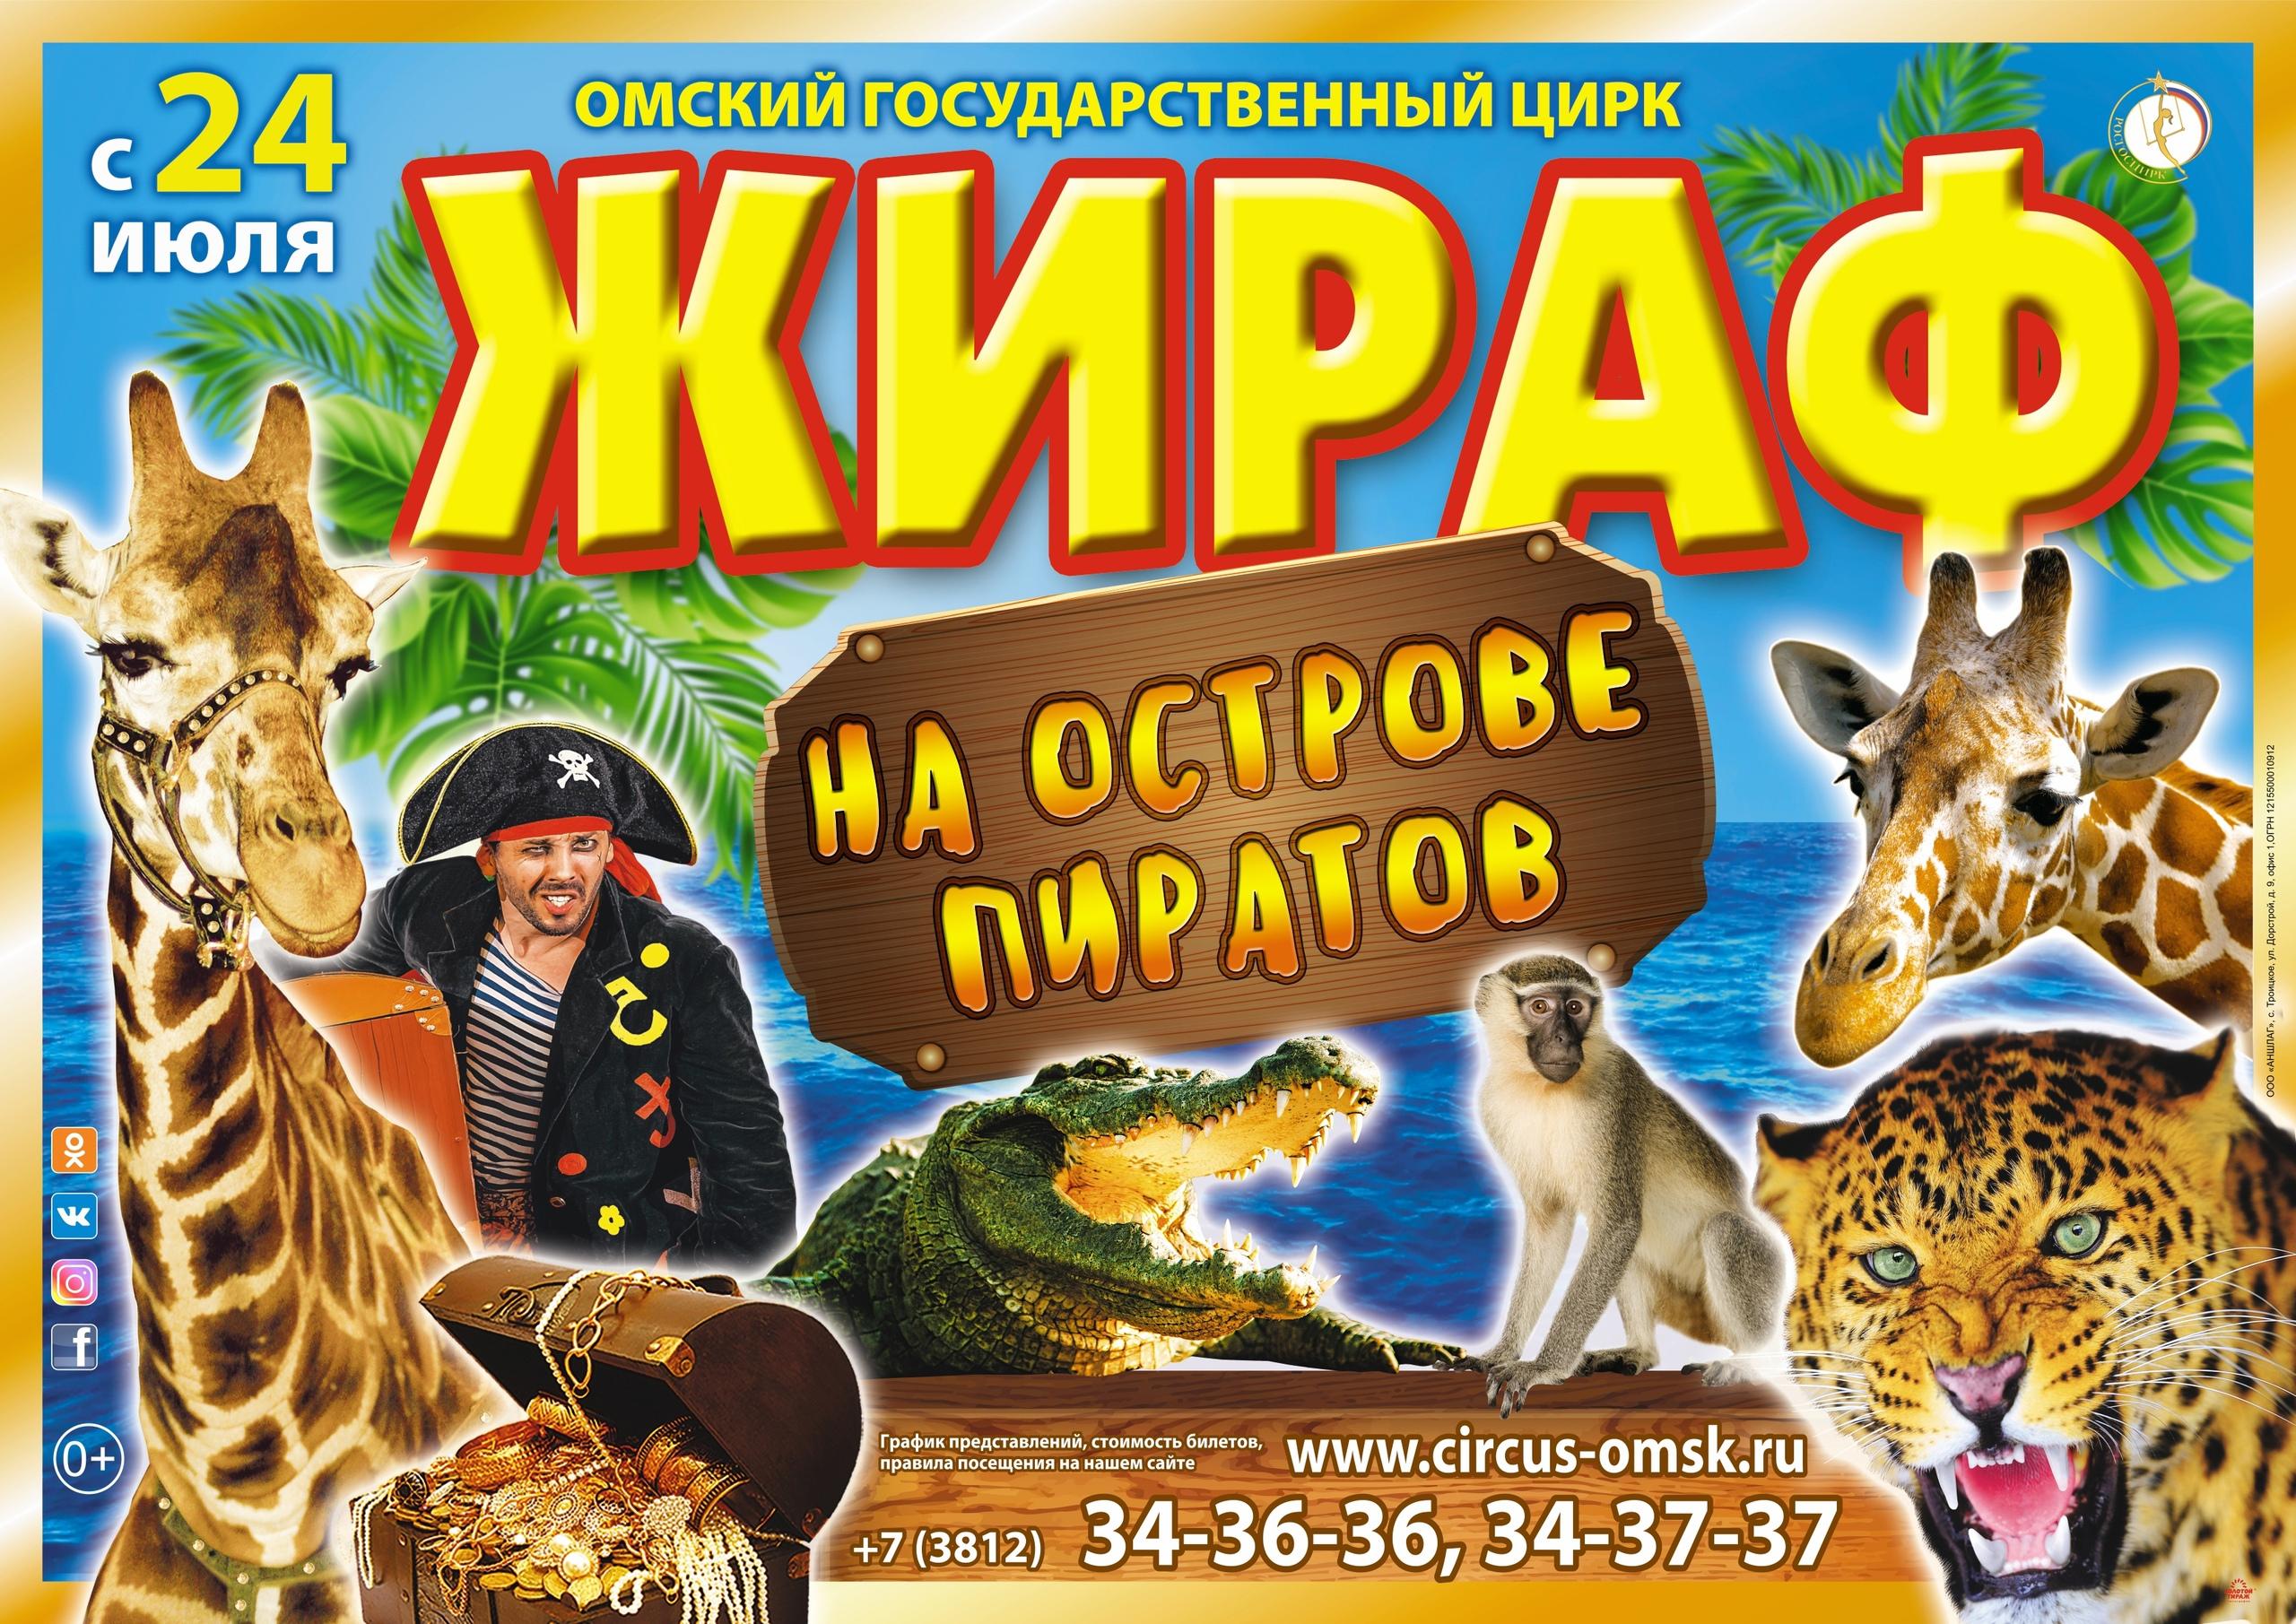 Билеты в цирк на сегодня. Цирк в Омске 2021. Цирк в Омске 2022 афиша. Цирк Жираф на острове пиратов. Афиша цирка.